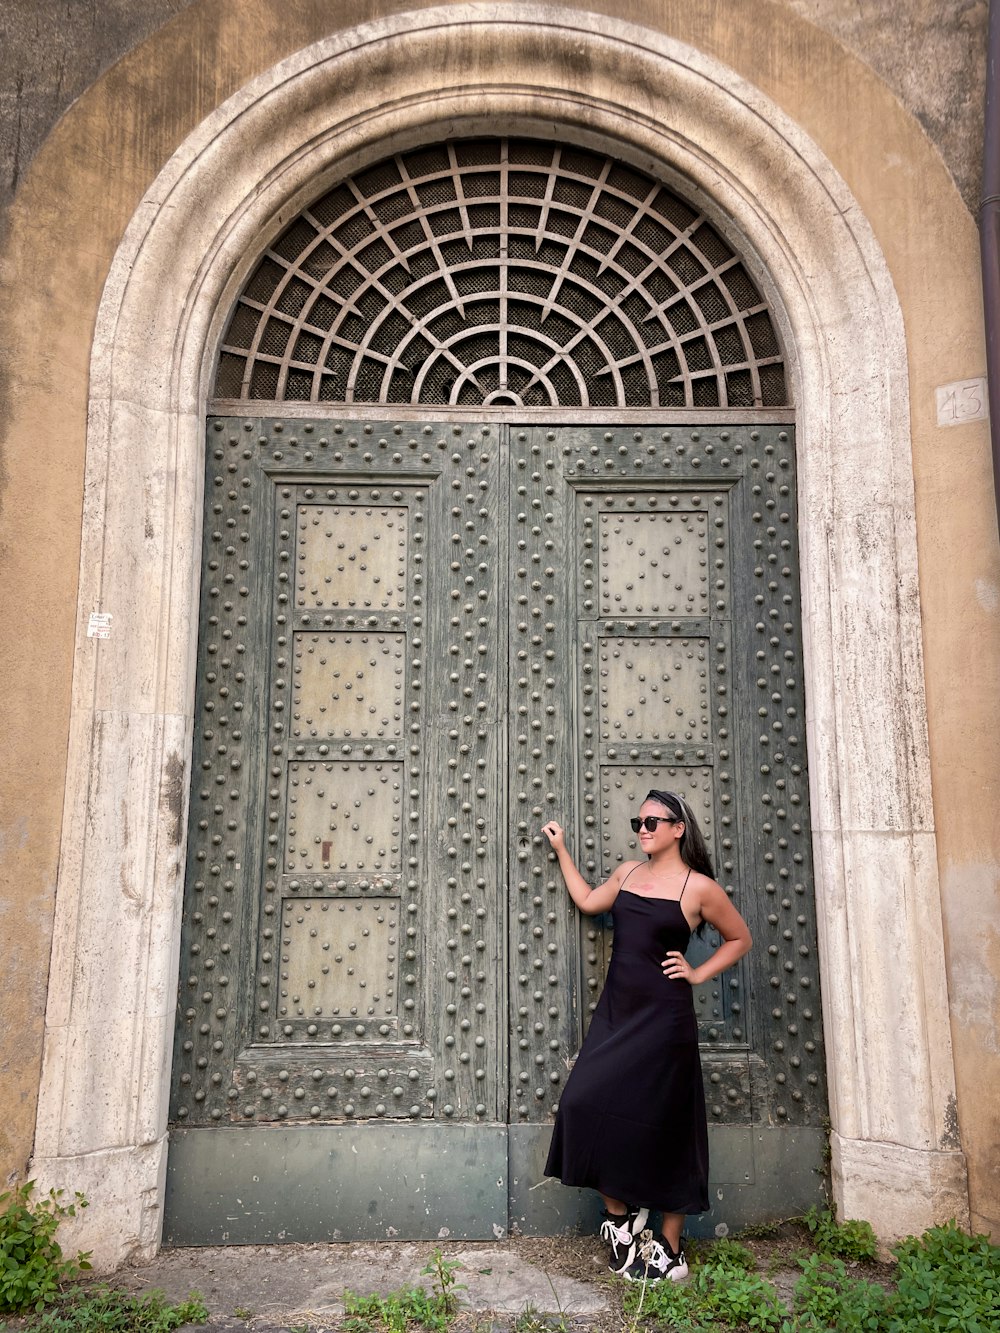 Una mujer con un vestido negro parada frente a una puerta